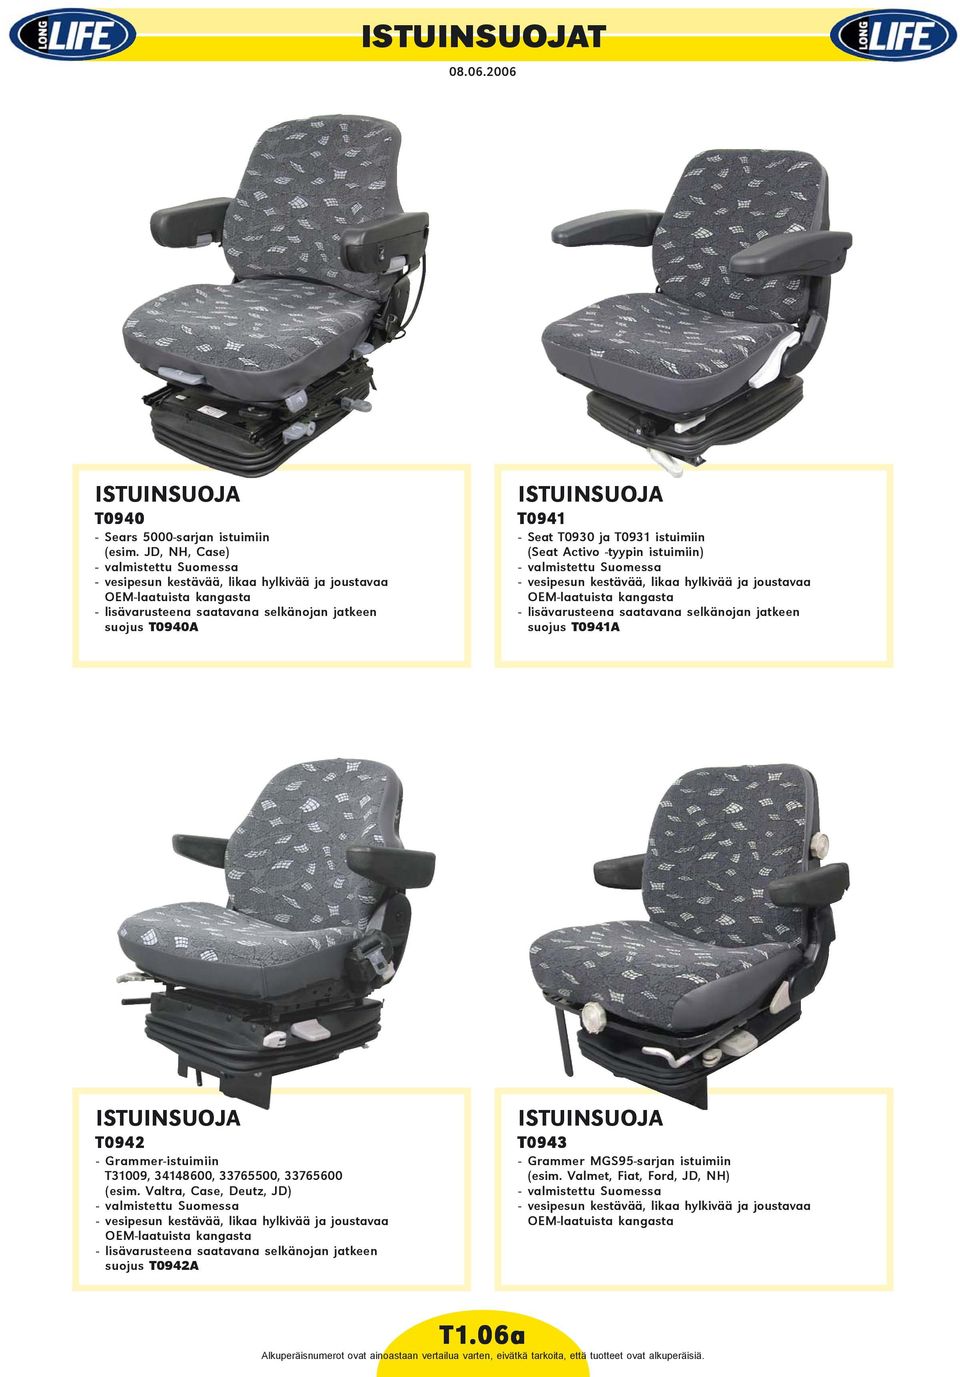 T0930 ja T0931 istuimiin (Seat Activo -tyypin istuimiin) - valmistettu Suomessa - vesipesun kestävää, likaa hylkivää ja joustavaa OEM-laatuista kangasta - lisävarusteena saatavana selkänojan jatkeen